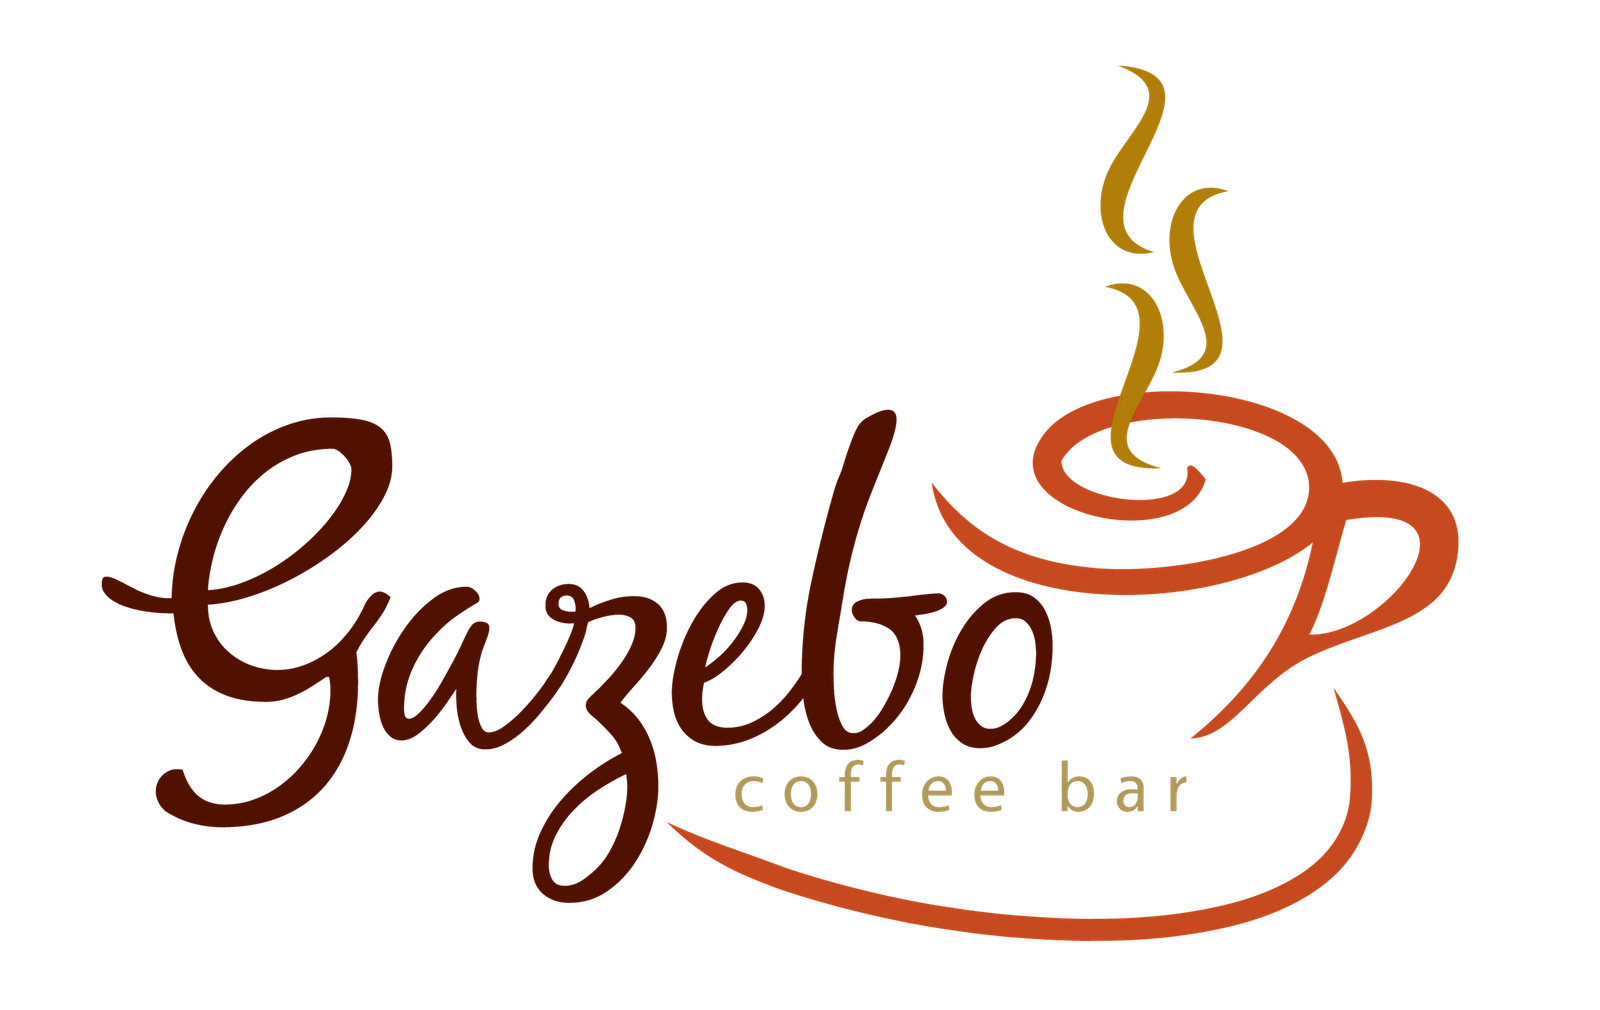 contoh logo cafe